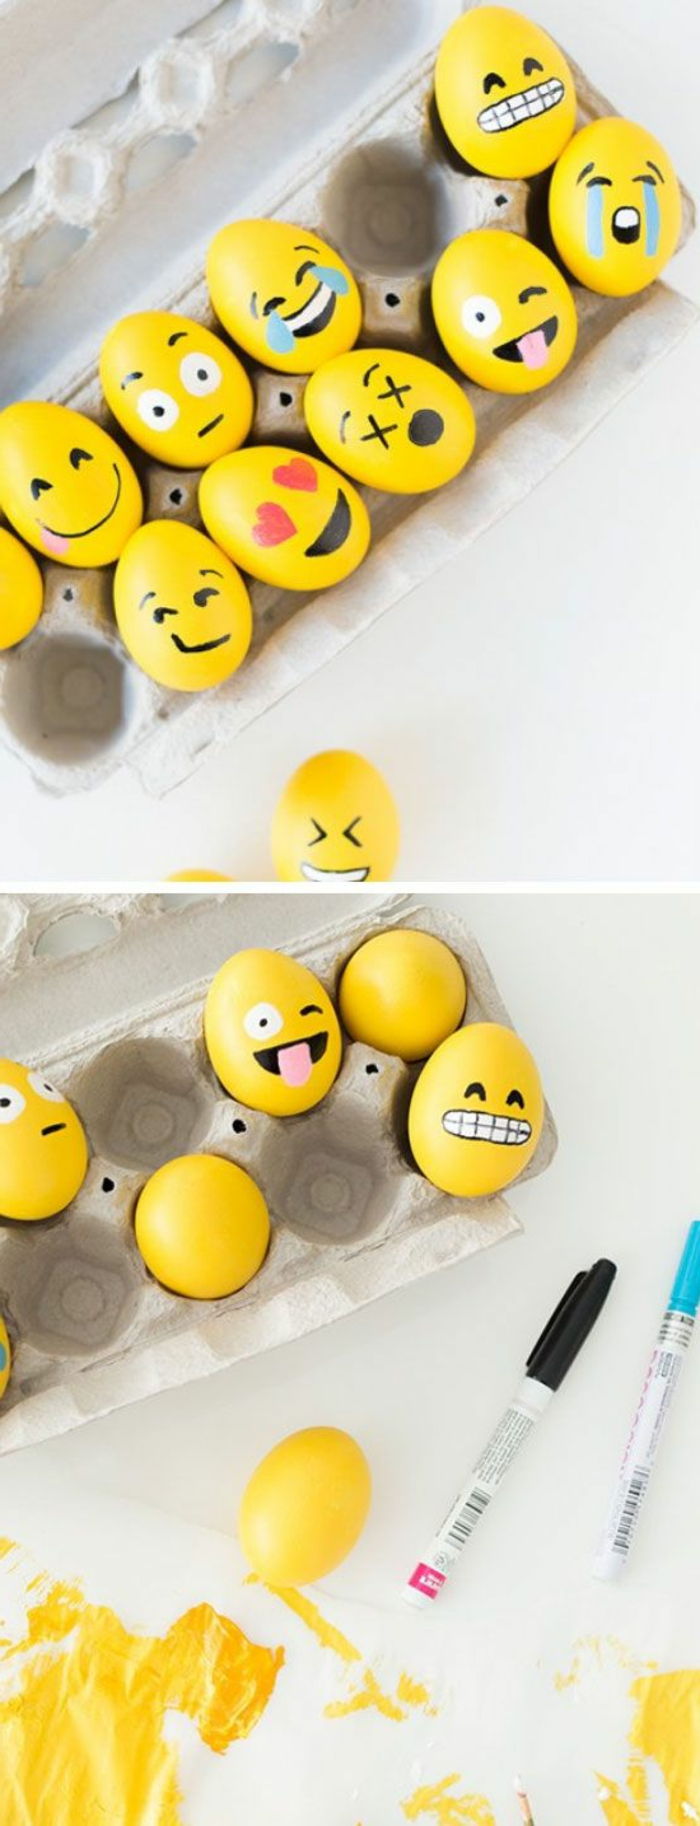 Barve ideje za rumena velika jajca z emoji - drugačen videz